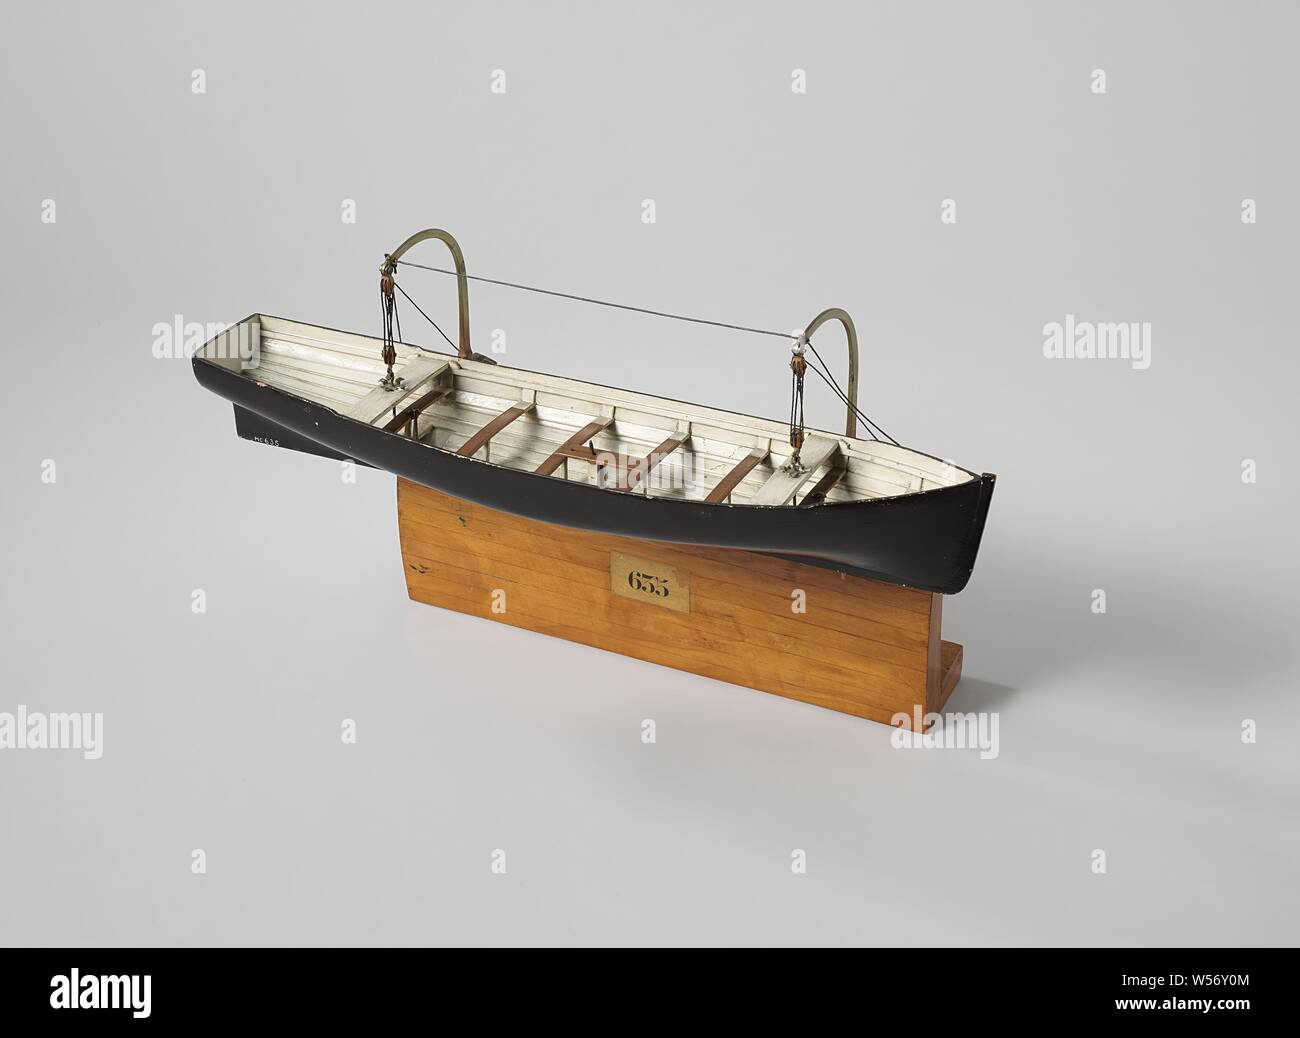 Modelo de un bote salvavidas, modelo de liberación de una parte de la pared  del barco con dos uñas Rijkswerf avits., Vlissingen, c. 1857 - c. 1858,  madera (material vegetal), latón (aleación),